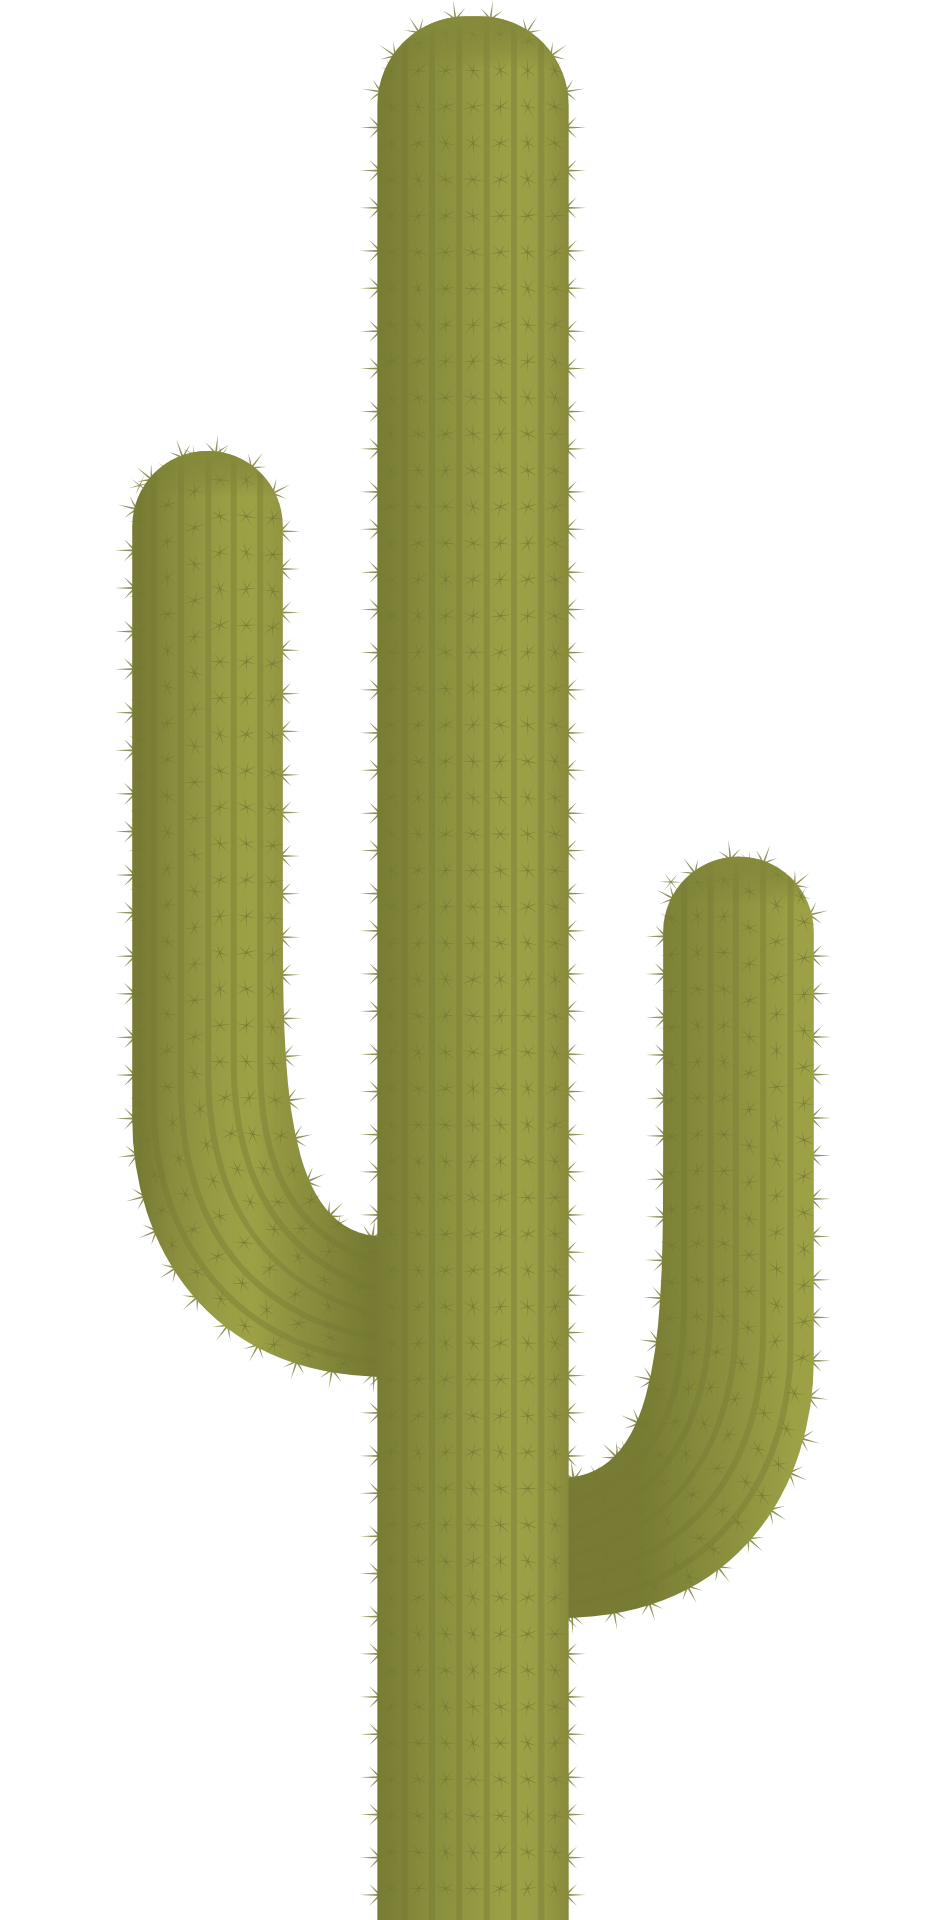 cactus plant vector png image pngpix #22099